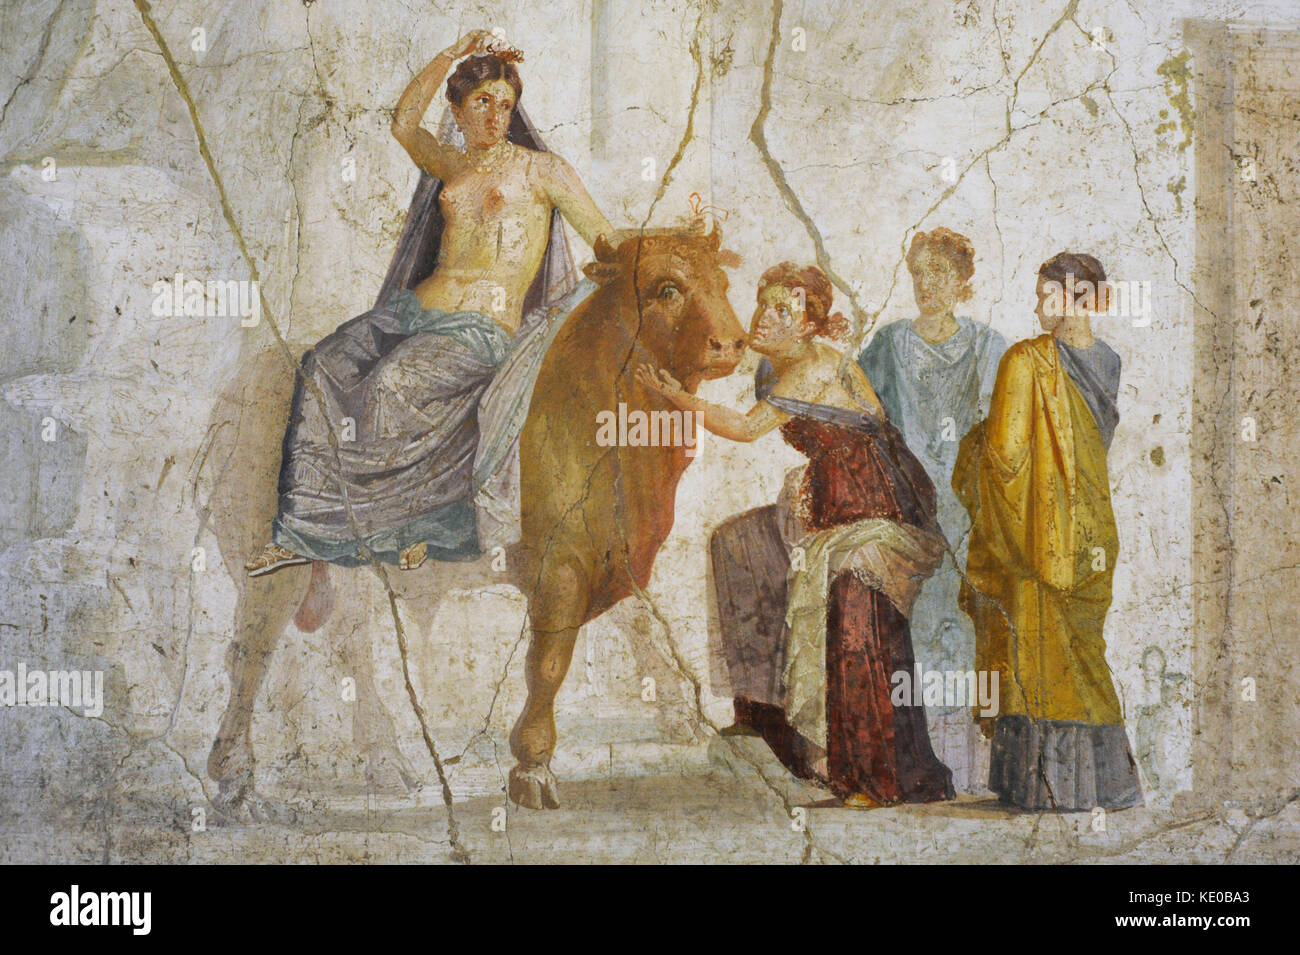 Fresko die Entführung Europas. Zu Master Chiaro zugeschrieben. 1. Vierte pompejanischen Stil (45-79). Pompeji. Nationalen Archäologischen Museum. Neapel. Italien. Stockfoto